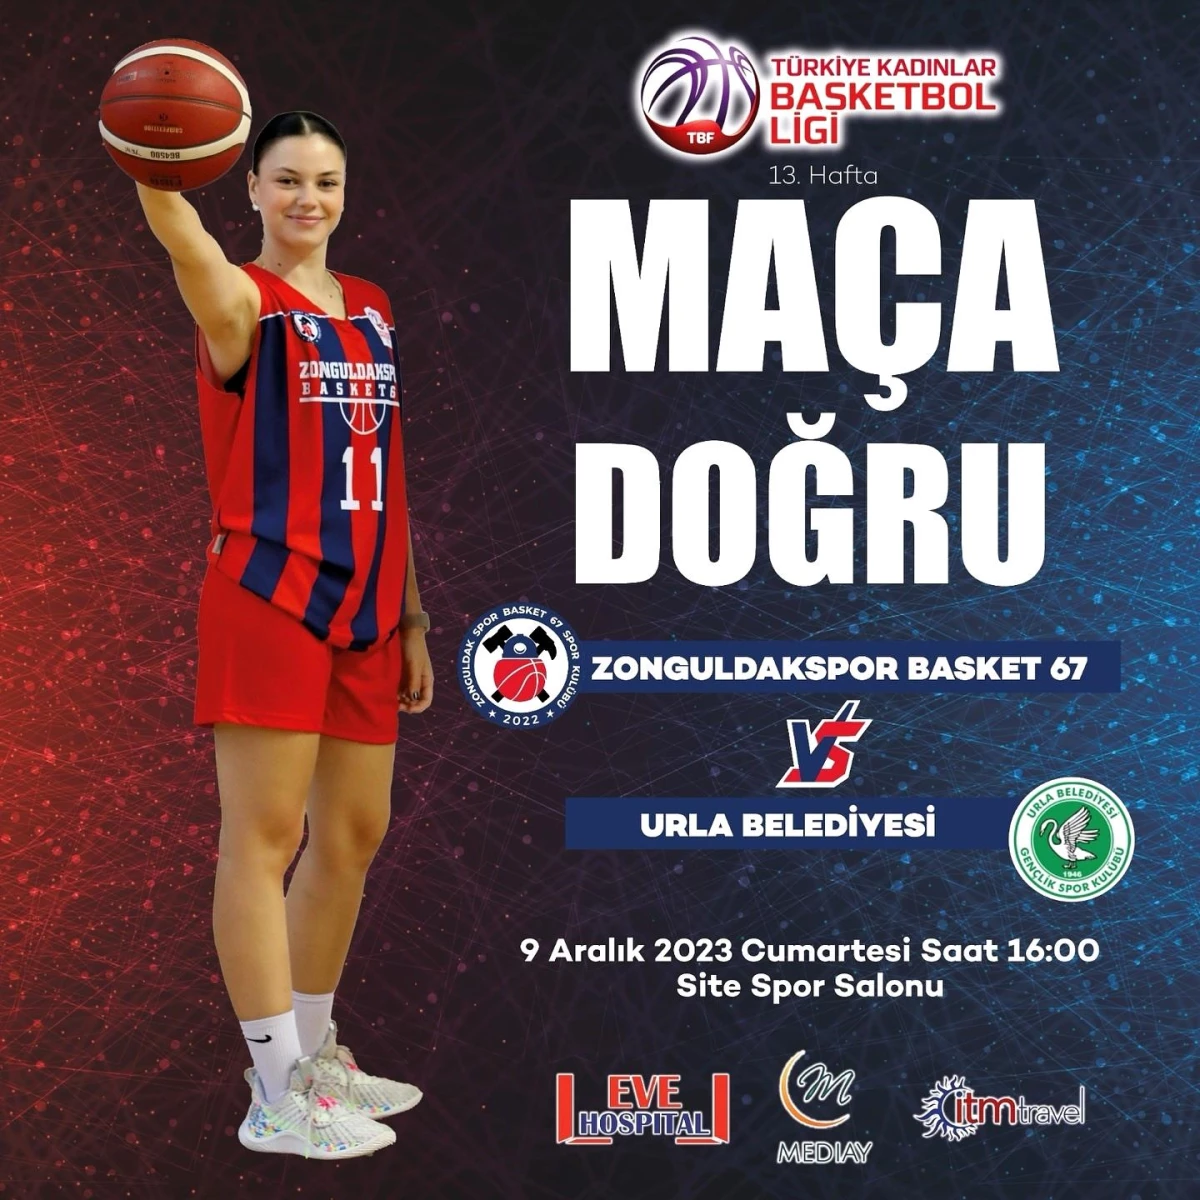 Zonguldakspor Basket 67 Takımı, Urla Belediyesi maçında galibiyet hedefliyor